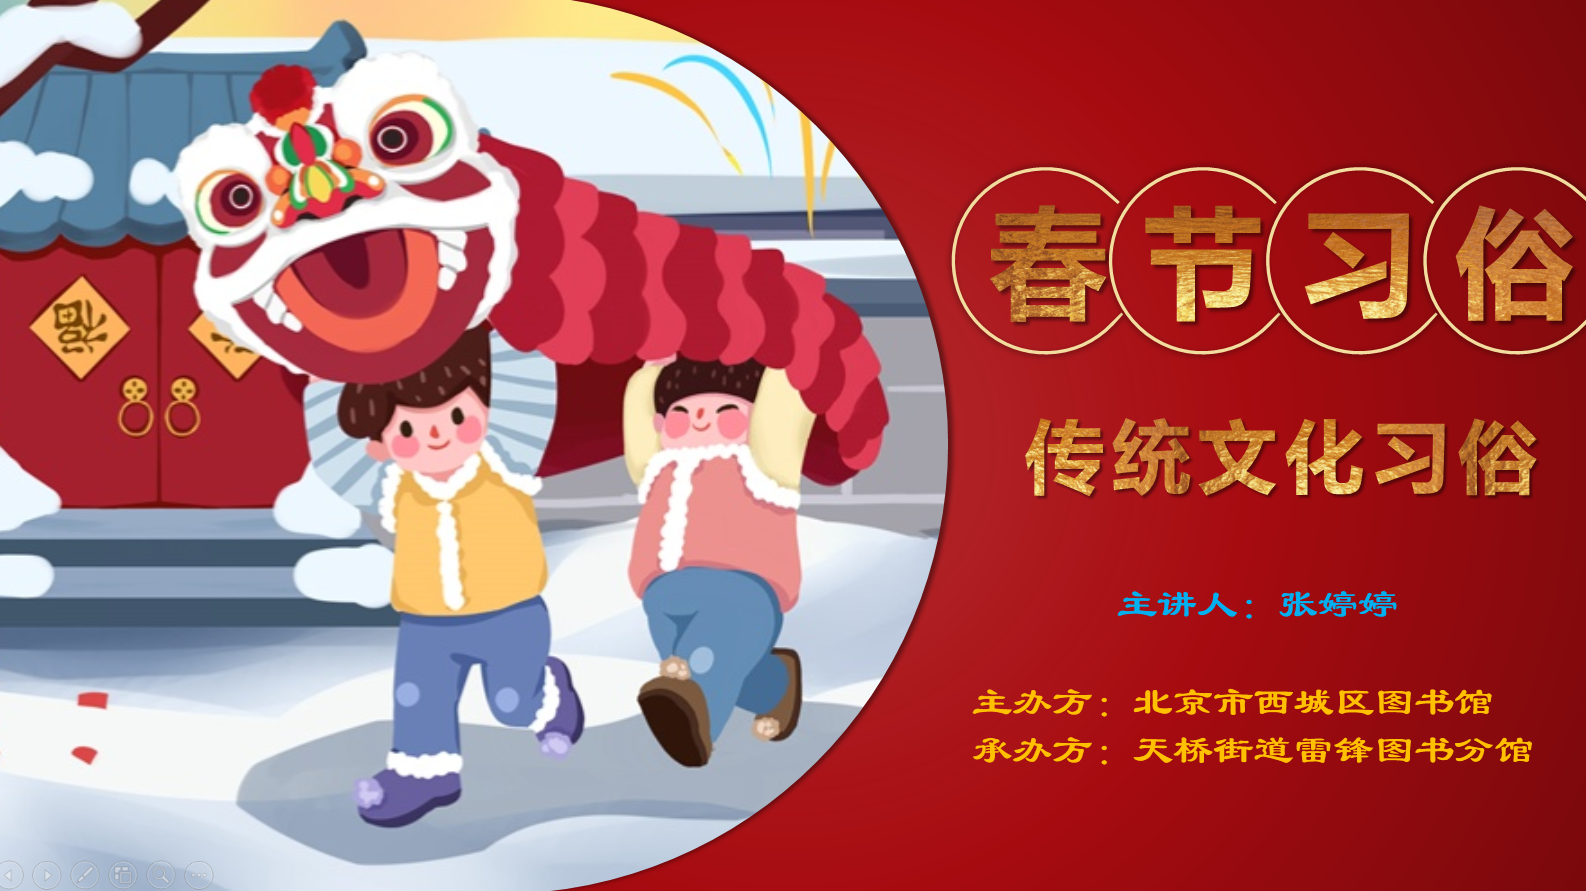 2022-01-25 阅读体验行系列—中国传统节日与食文化讲座1.png